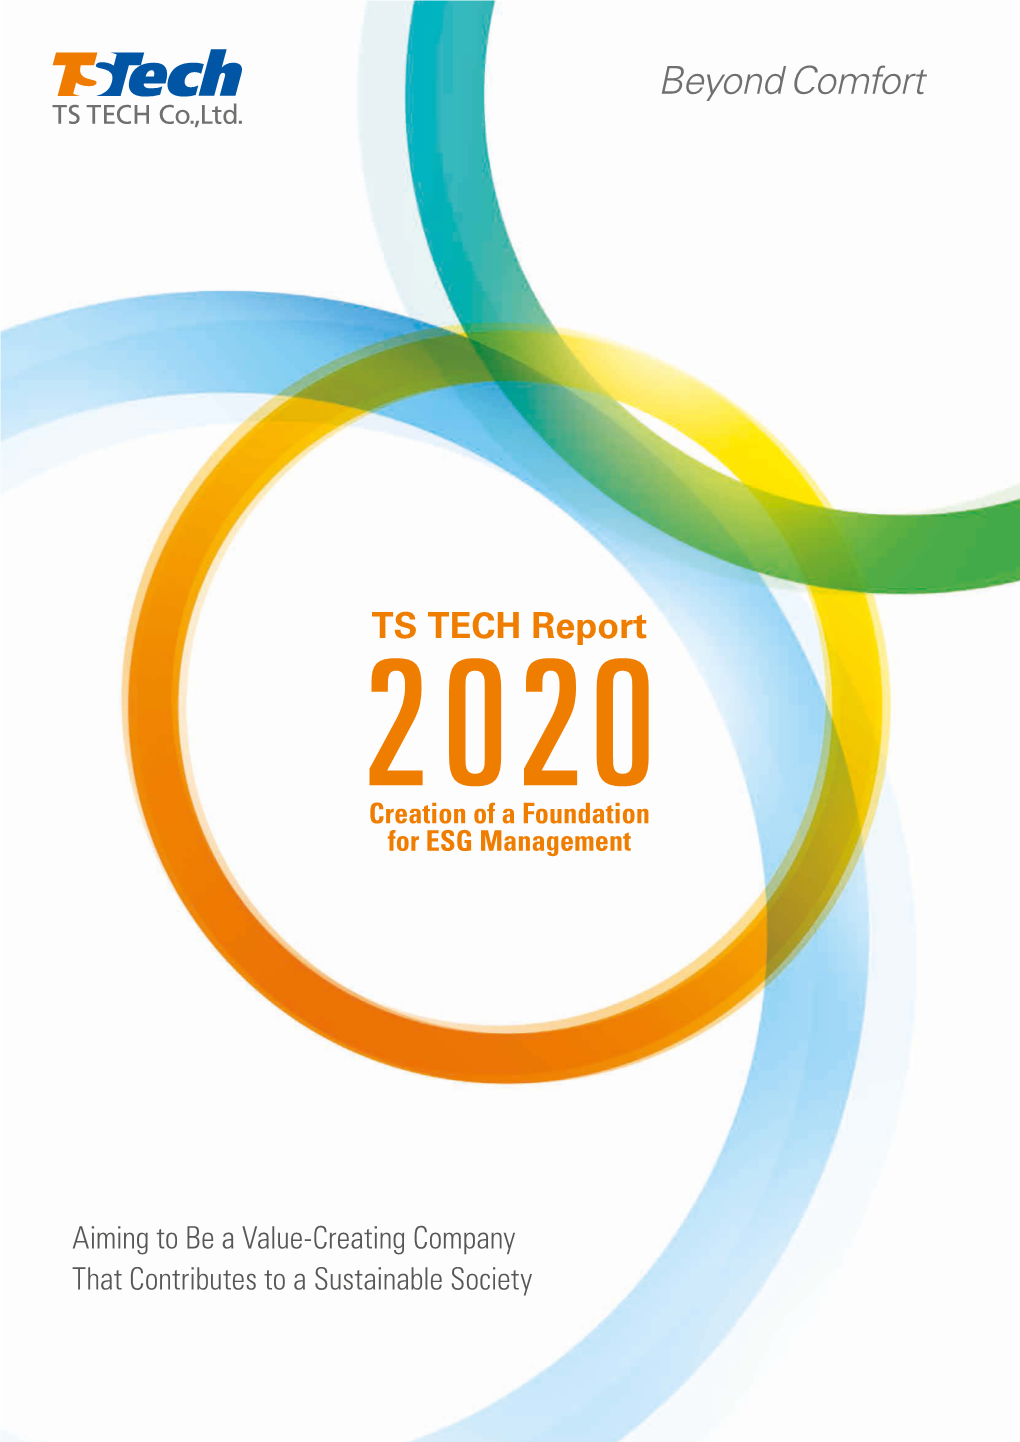 TS TECH Report 2020